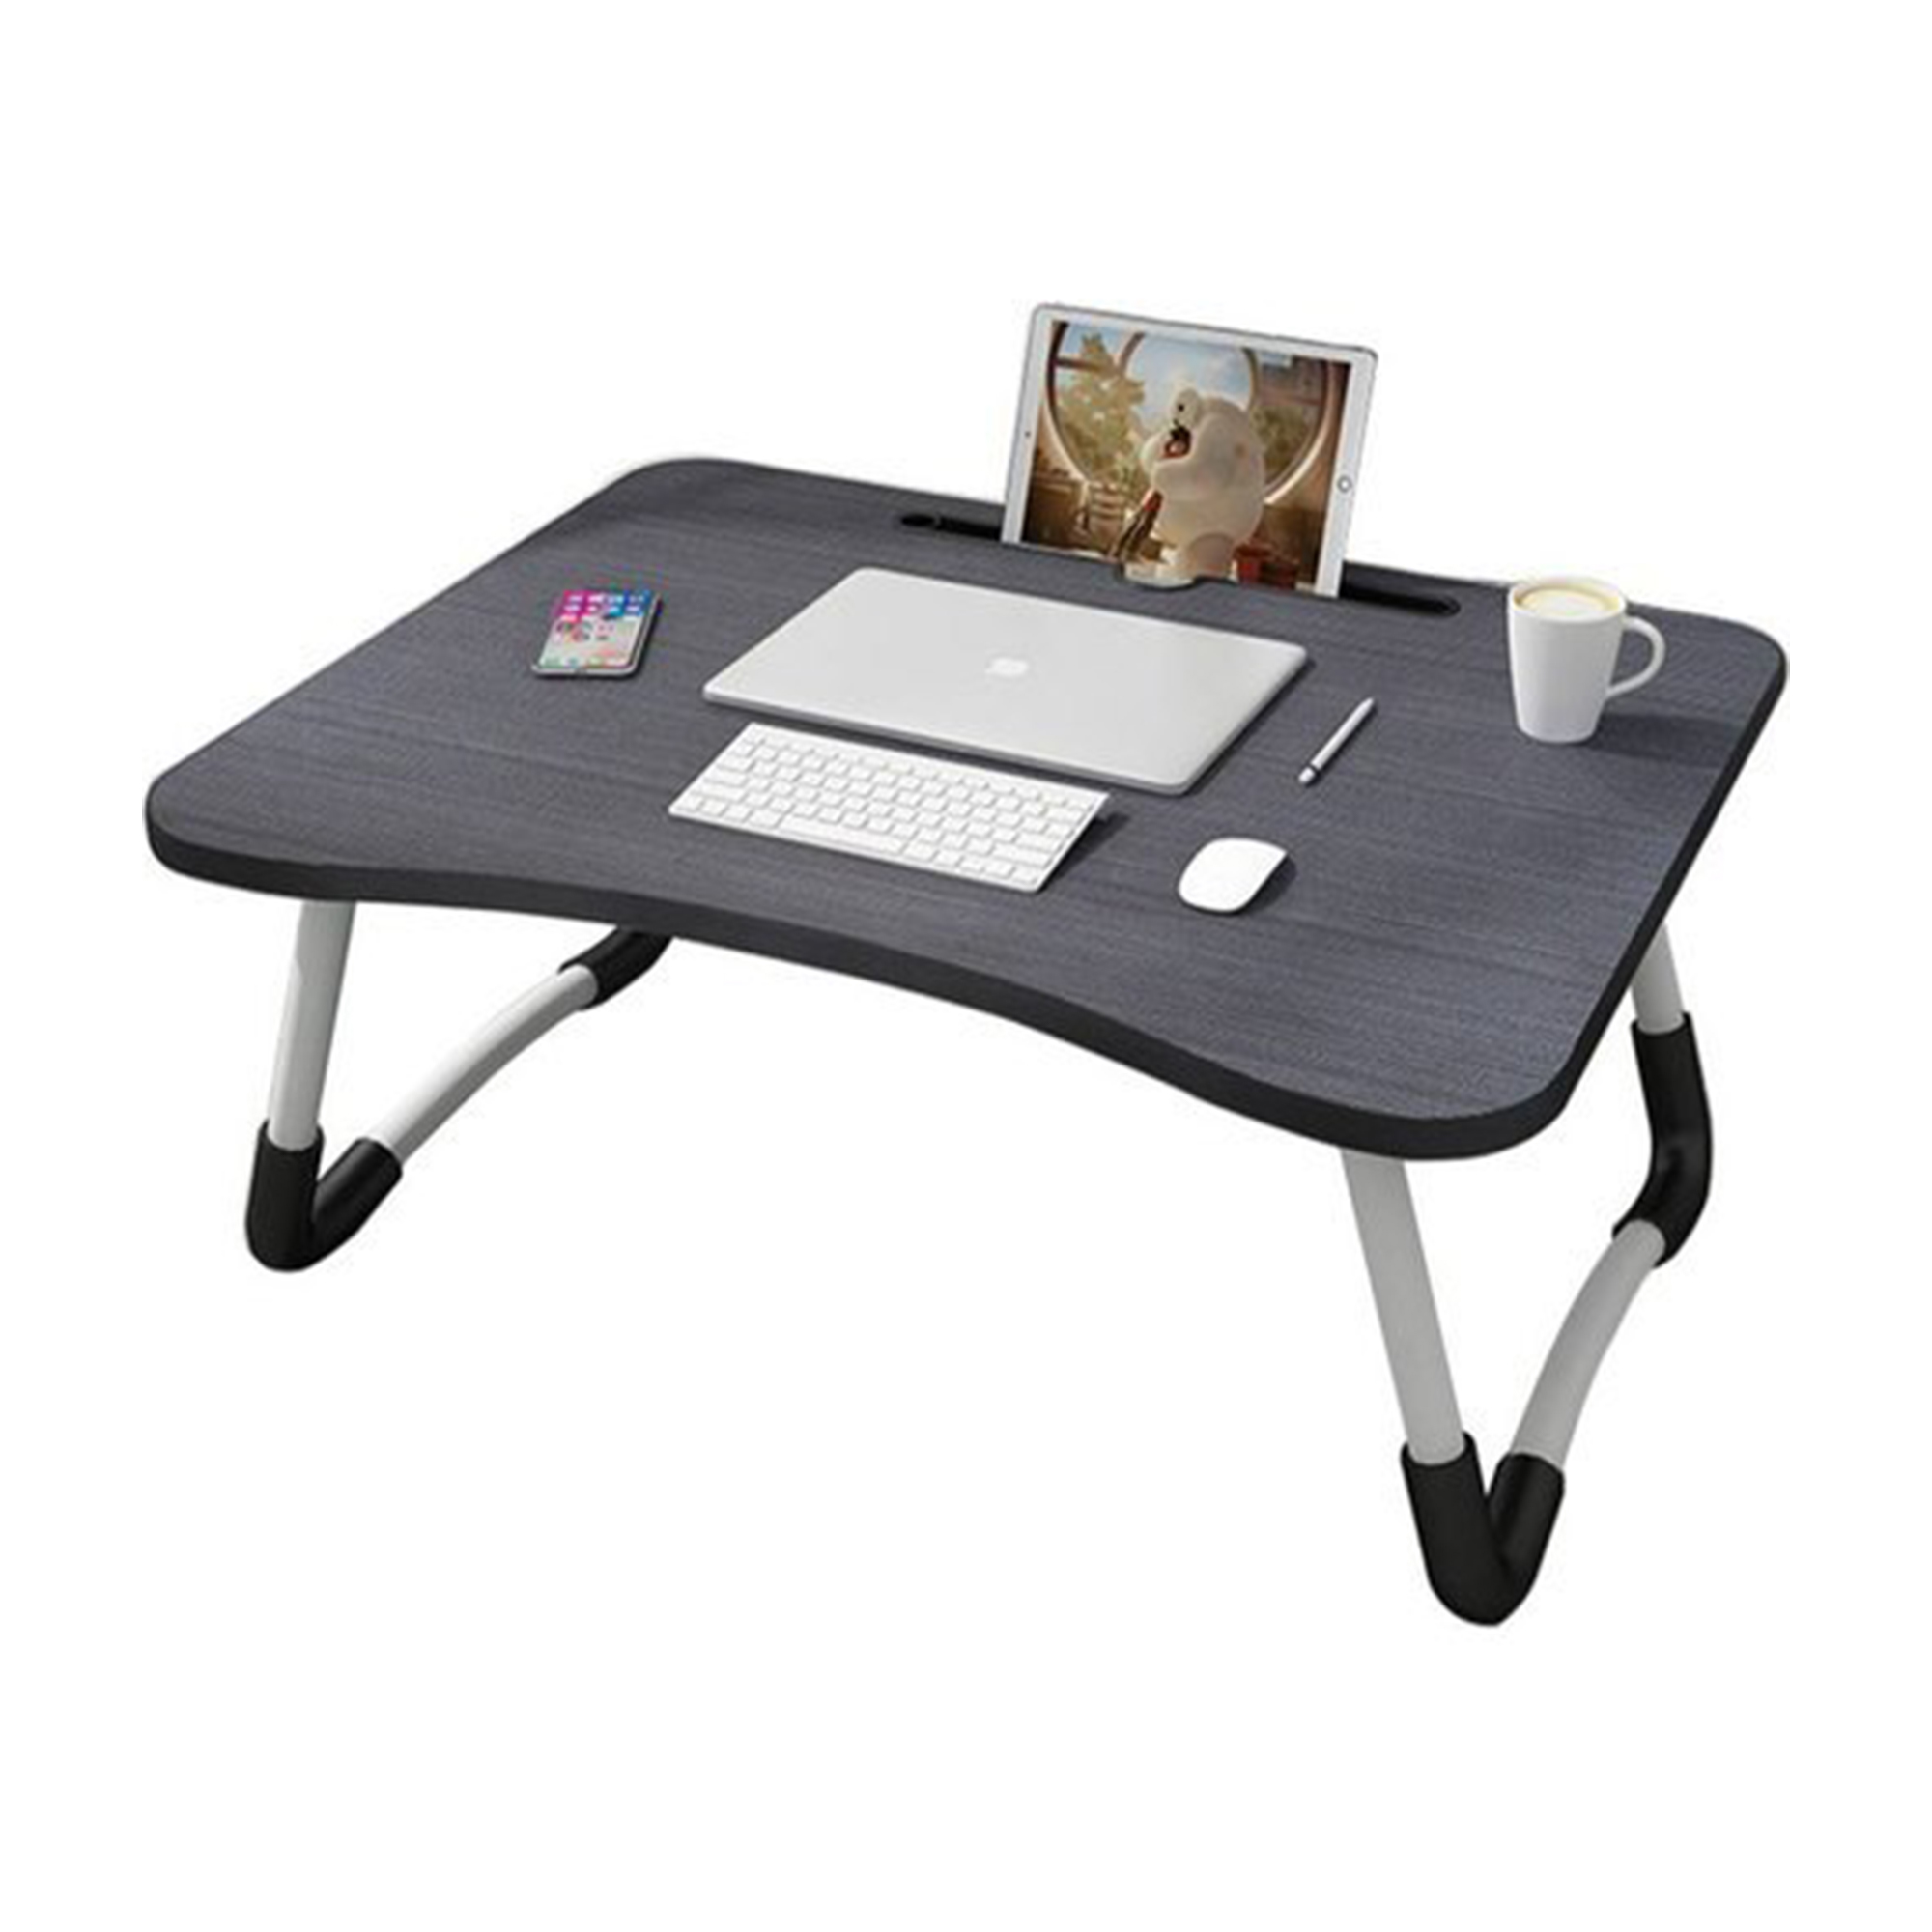 Foldable Multi-purpose Laptop Table